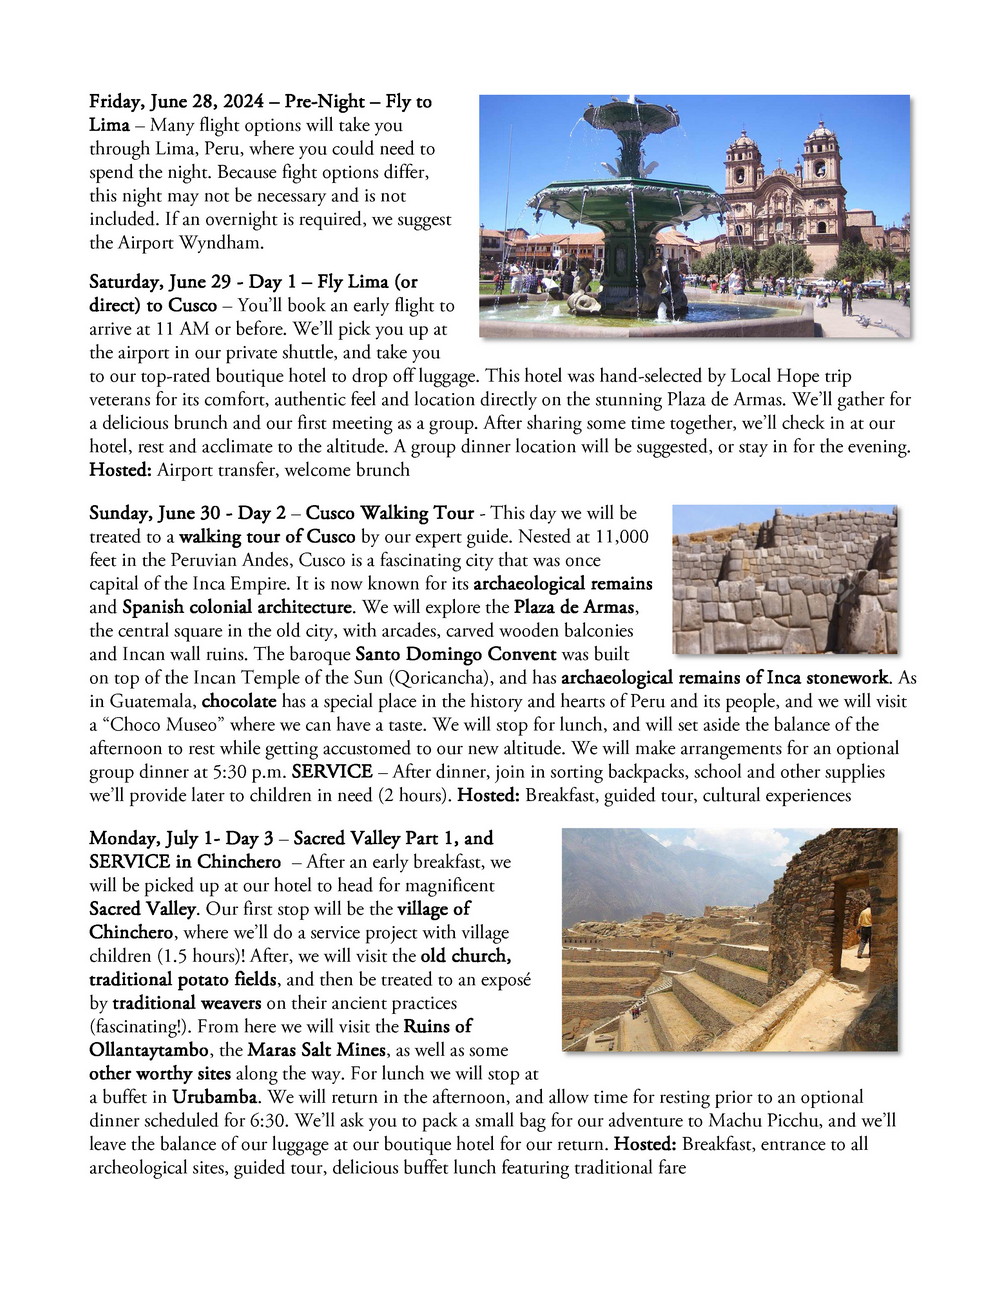 Machu Picchu Page 3